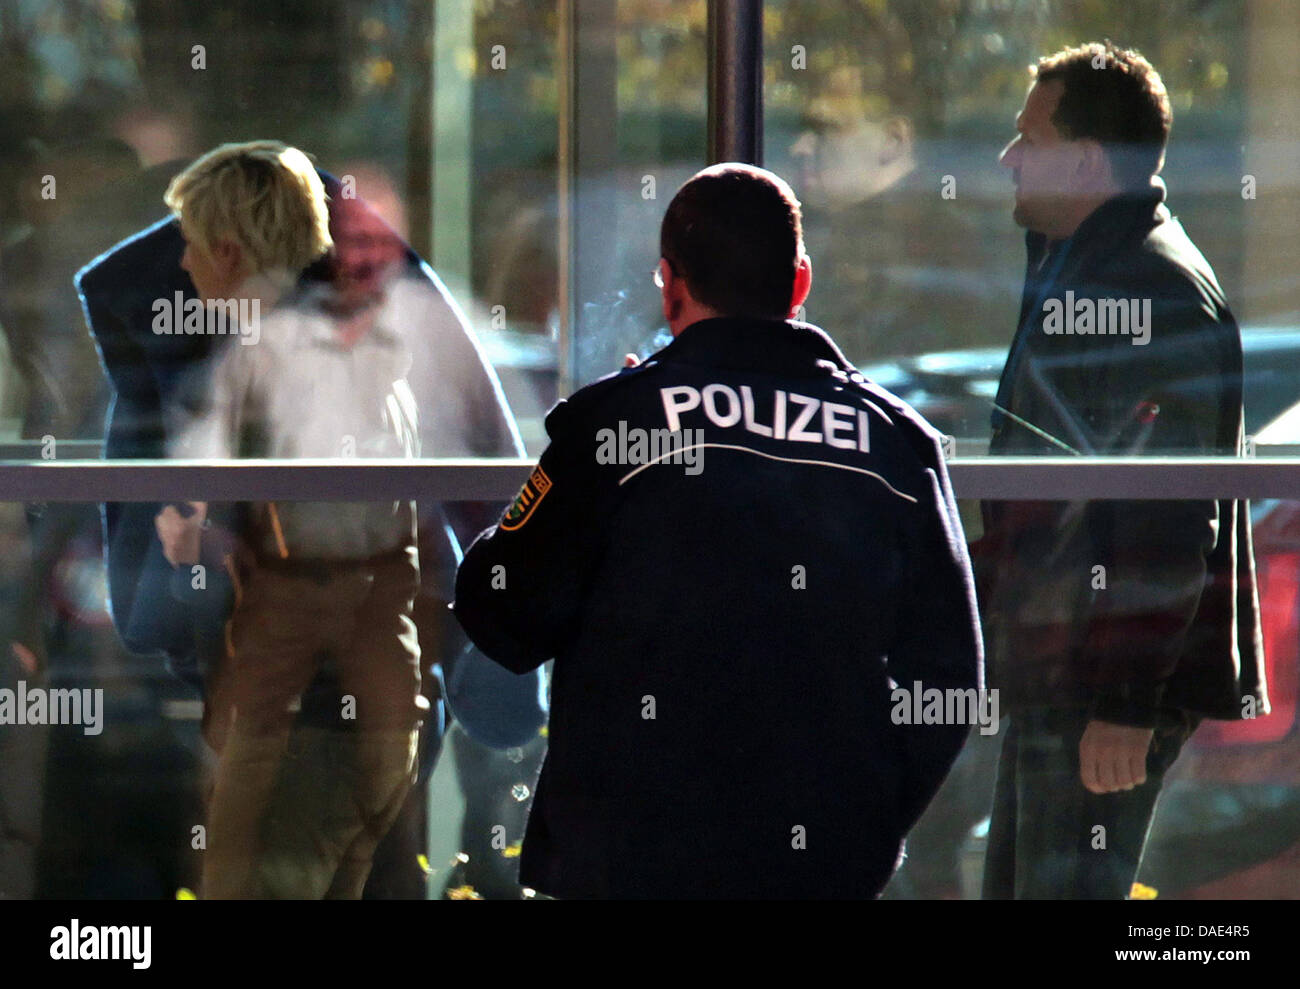 Polizisten führen eine 36 jährige Beate Z. aus einem Gebäude der Staatsanwaltschaft in Zwickau, Deutschland, 9. November 2011. Bundesverfolger haben die Polizistin erschlagen sowie eine Reihe von bisher ungelösten Morden an neun im Ausland geborenen Imbissstände und Shop-Betreiber, den Spitznamen "Döner Morde", um eine mutmaßliche Terrorzelle Neonazi verbunden. Beate Z. darf die Terr angehören. Stockfoto